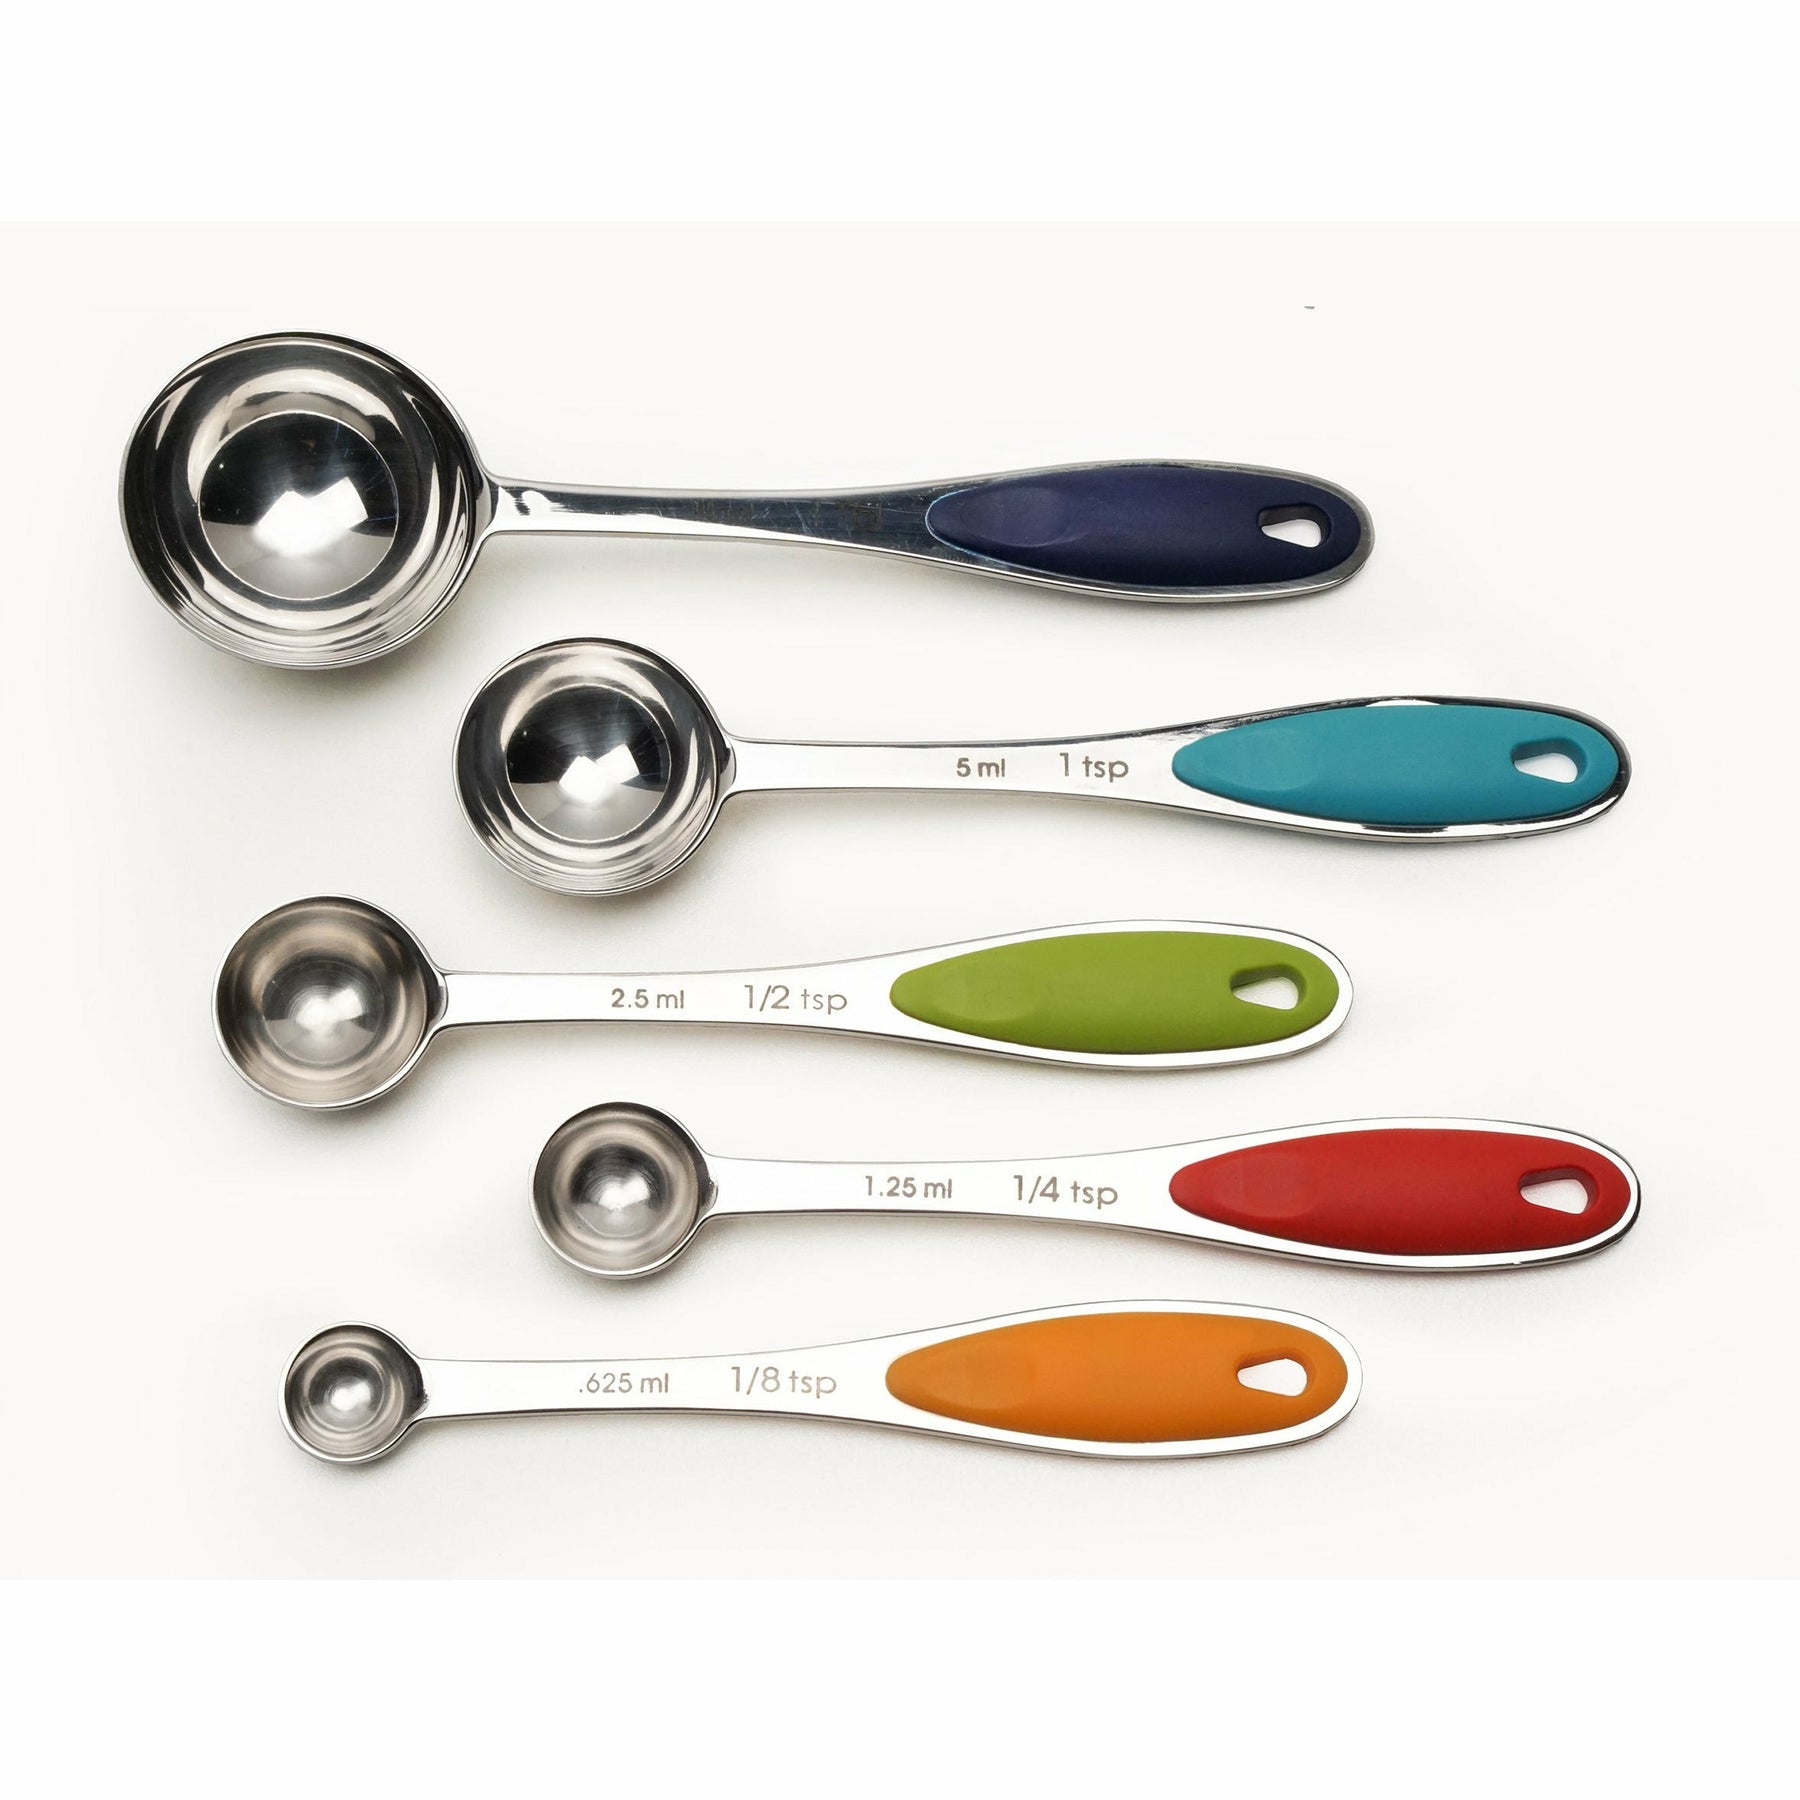 Oxo Measuring Spoon – Tarzianwestforhousewares